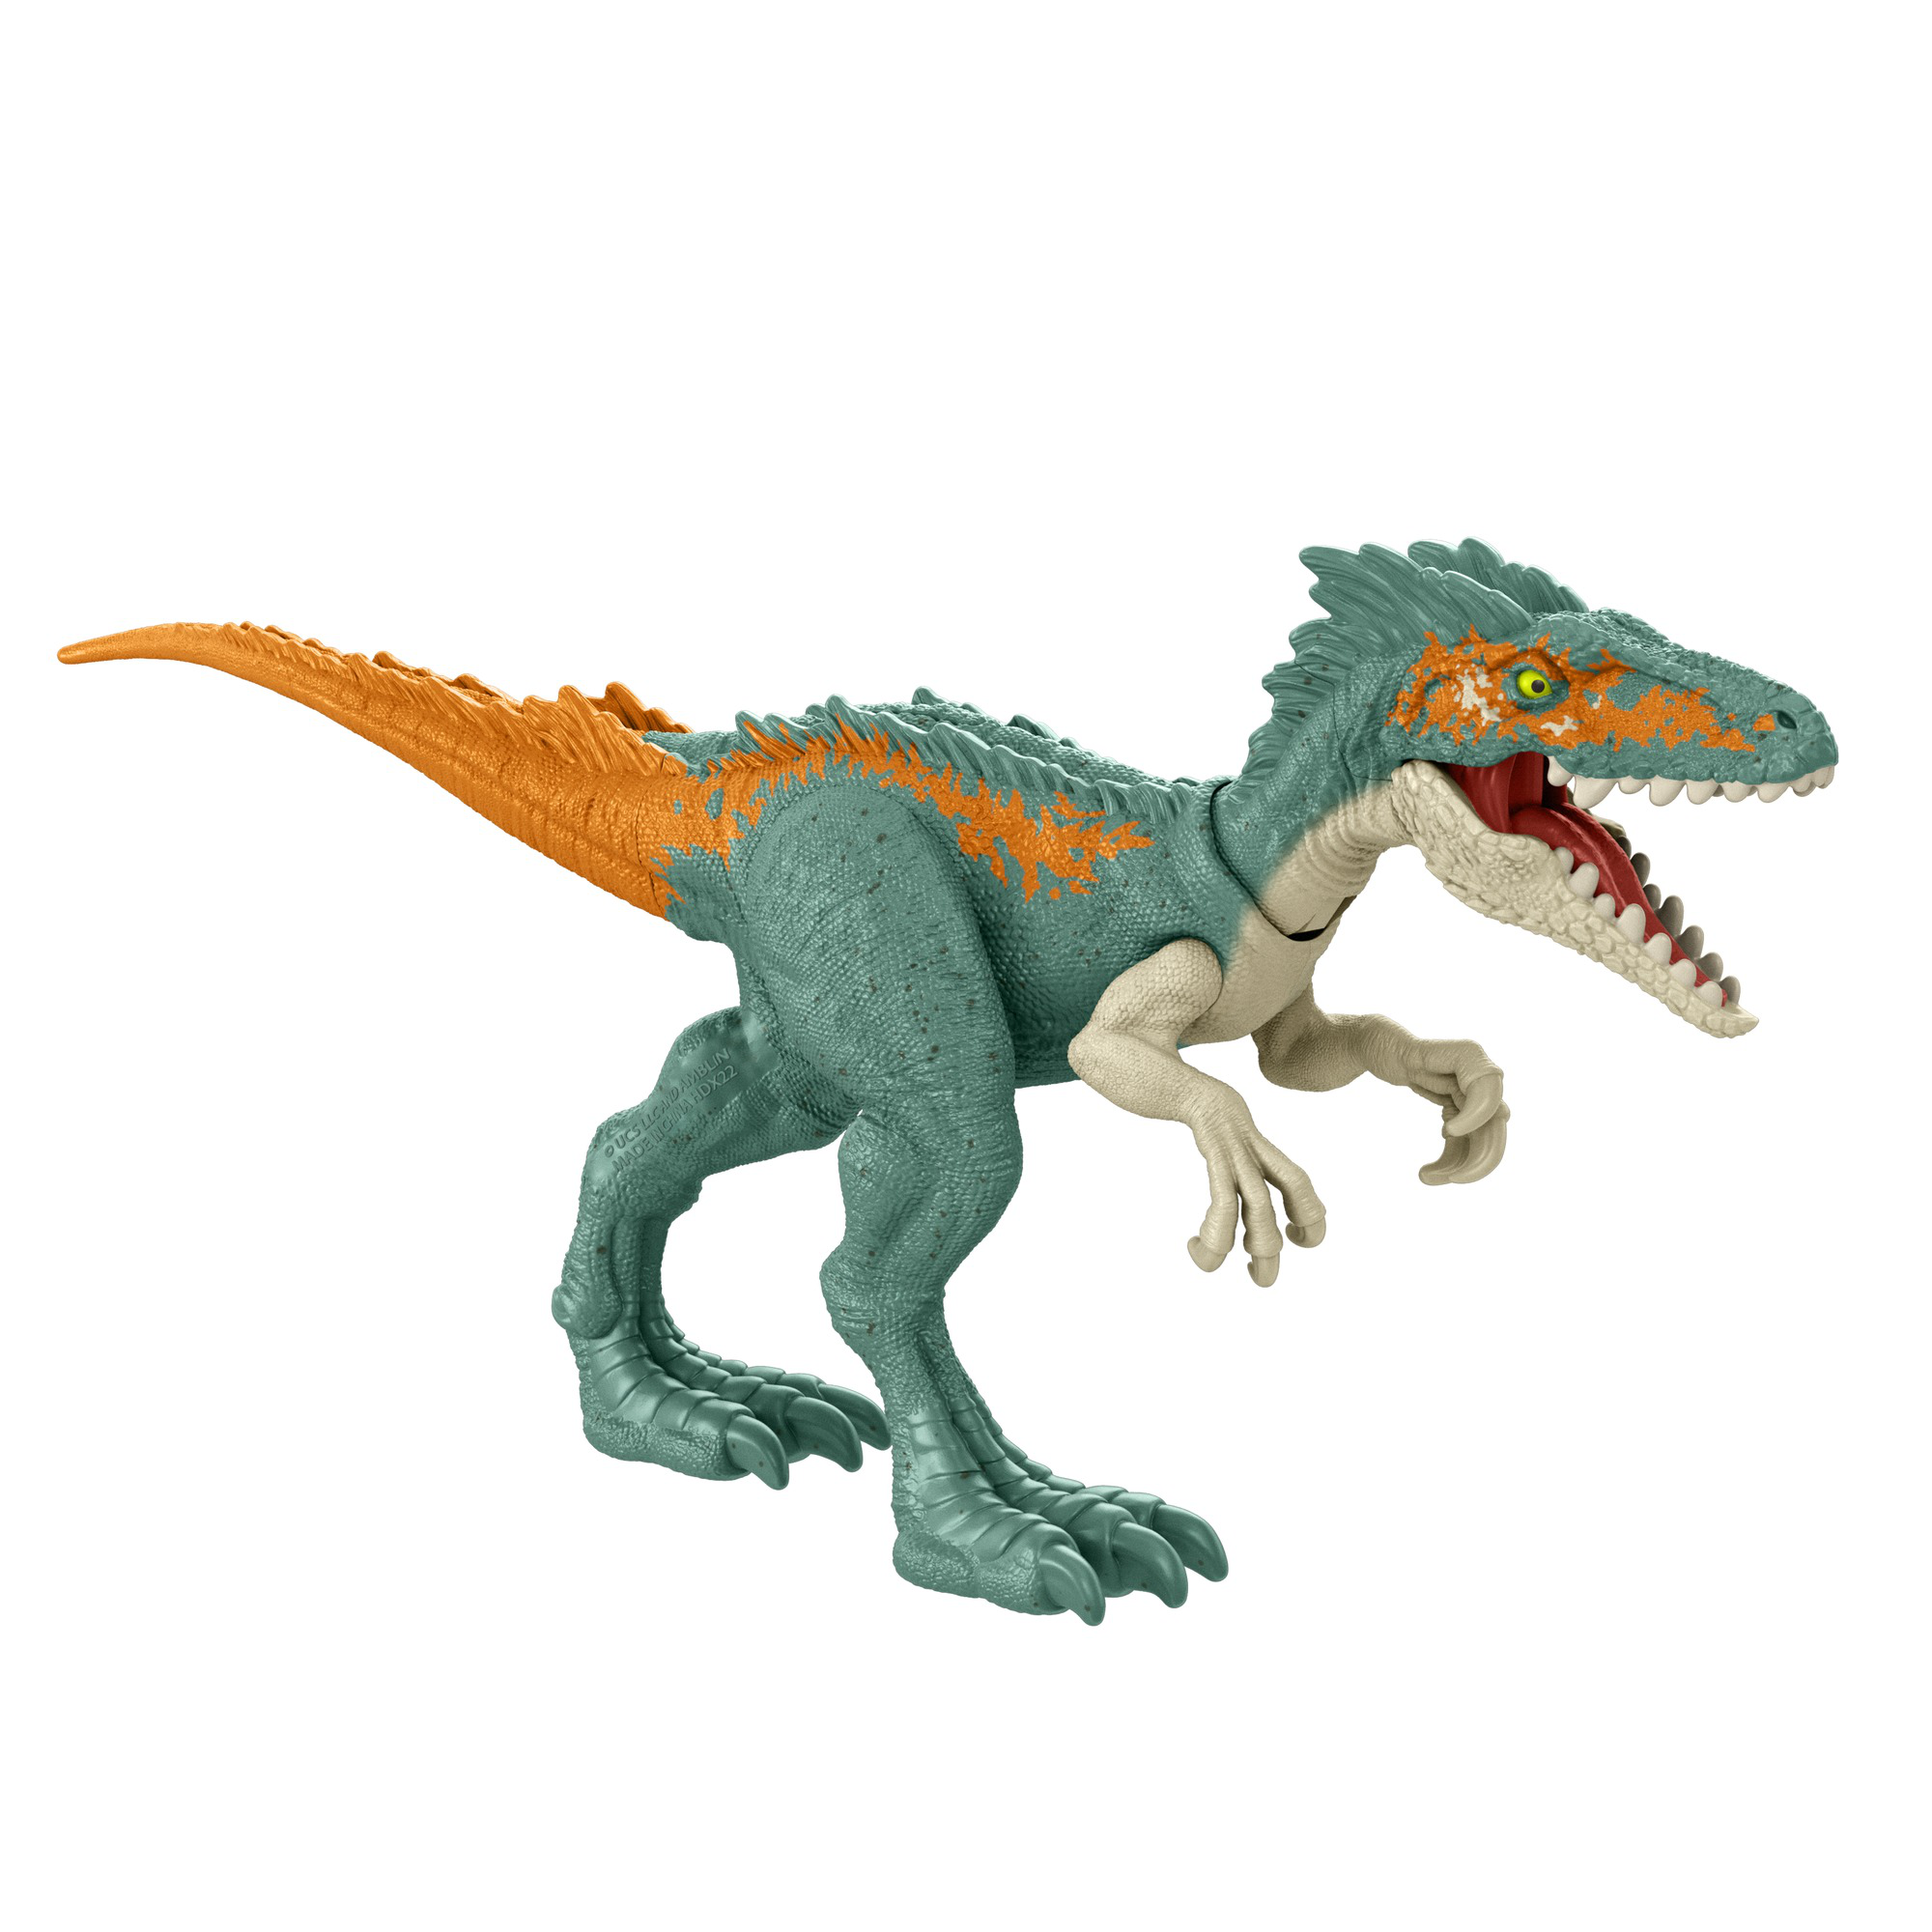 Jurassic world - moros intrepidus dinosauro giocattolo carnivoro con articolazioni mobili, per bambini 3+ anni - Jurassic World